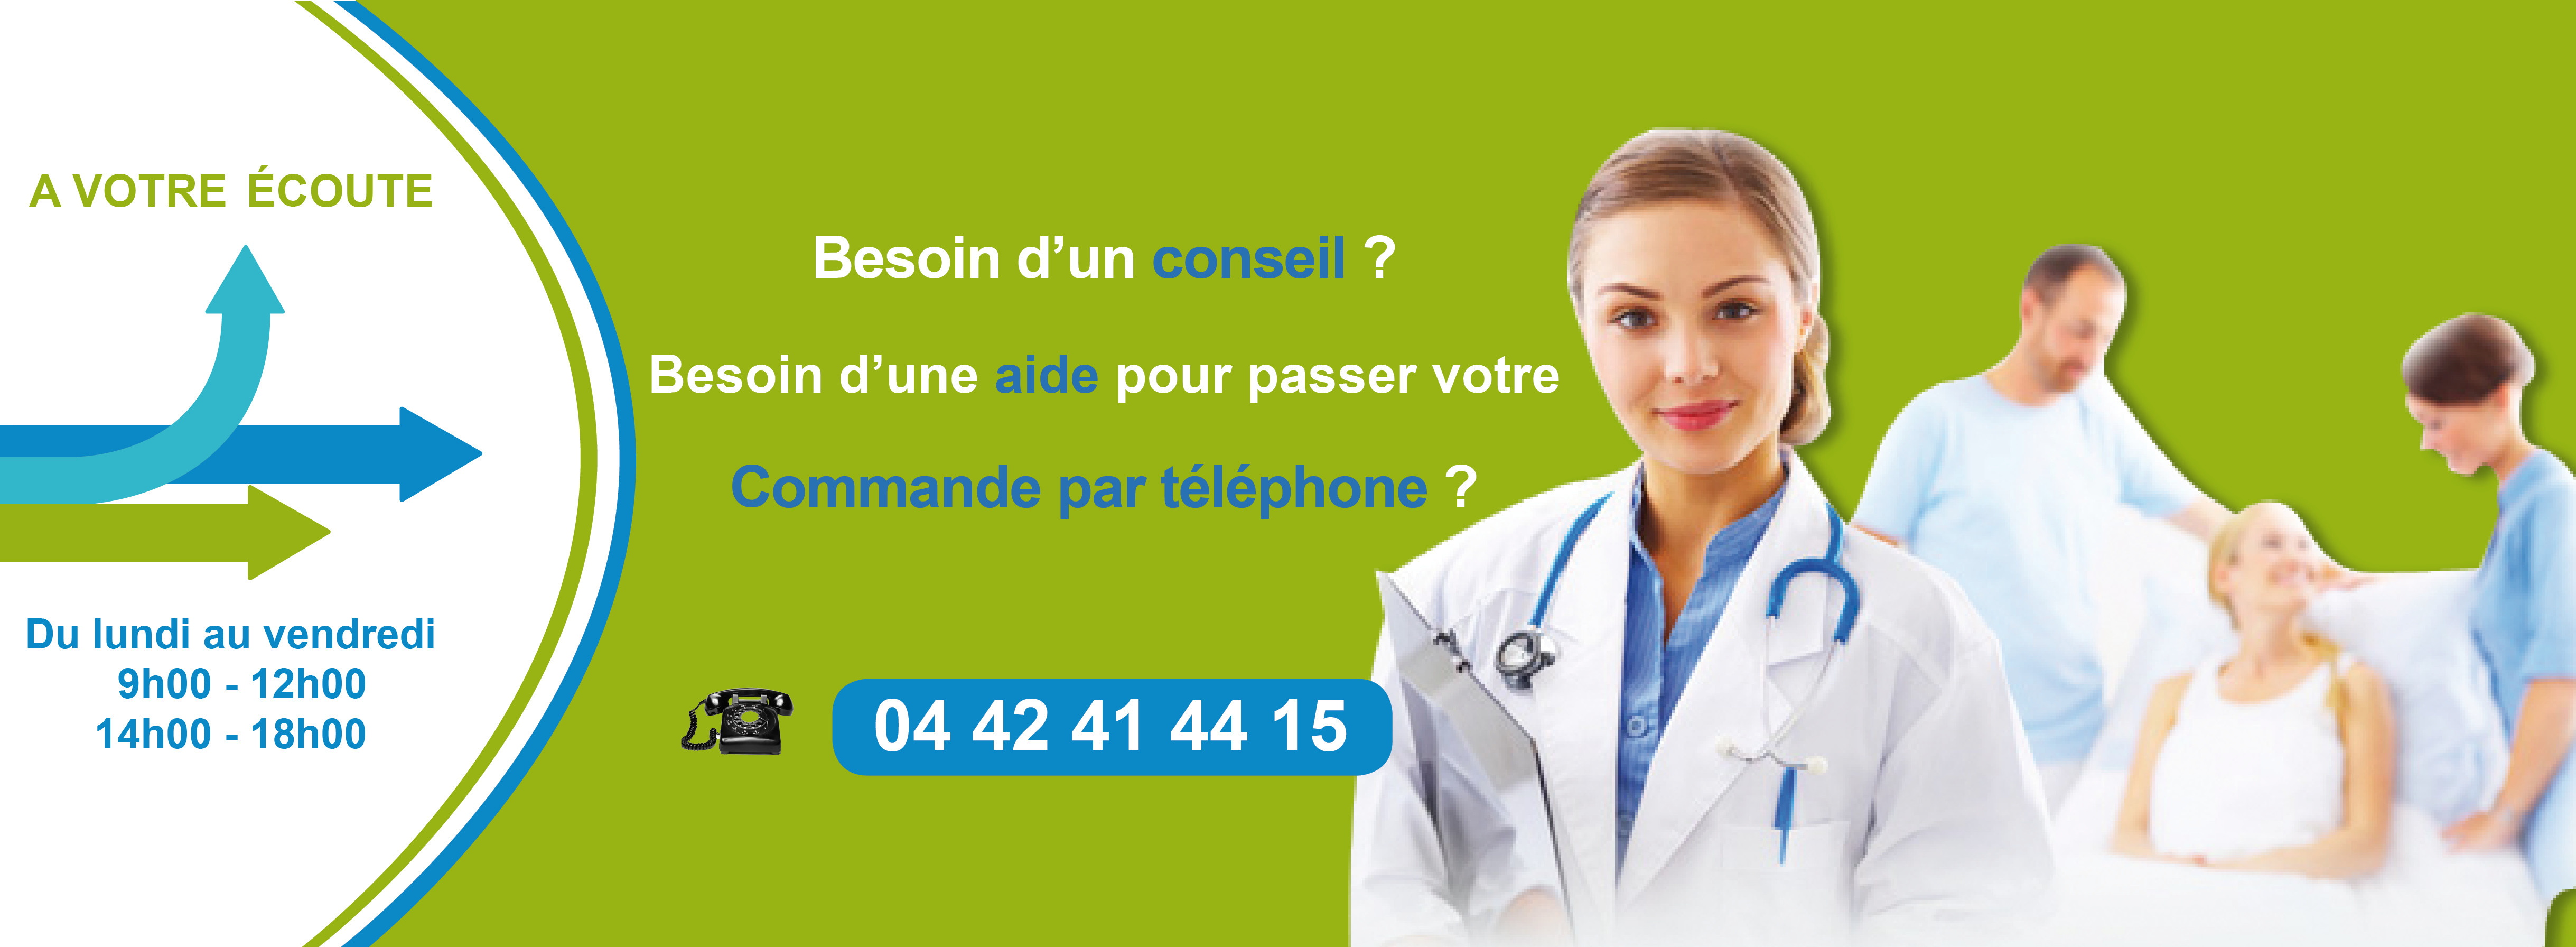 Matériel Médical.fr : vente de matériel médical depuis 1993